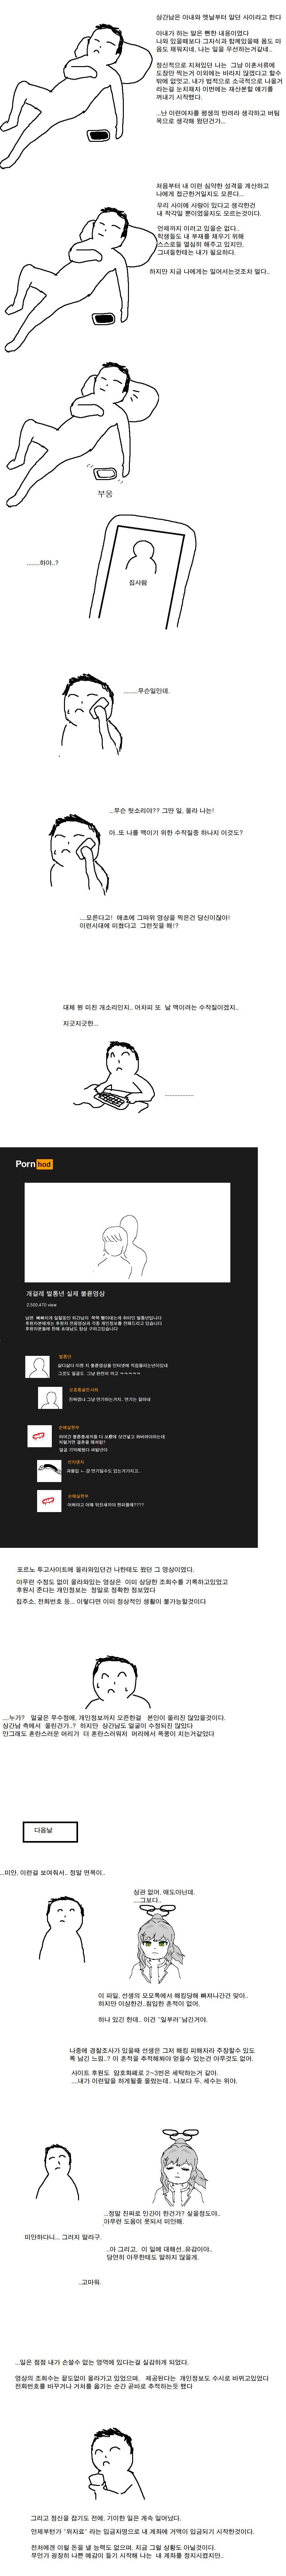 매운맛 주의) ntr남녀 참교육 당하는 만화 - 블루 아카이브 채널 001.png